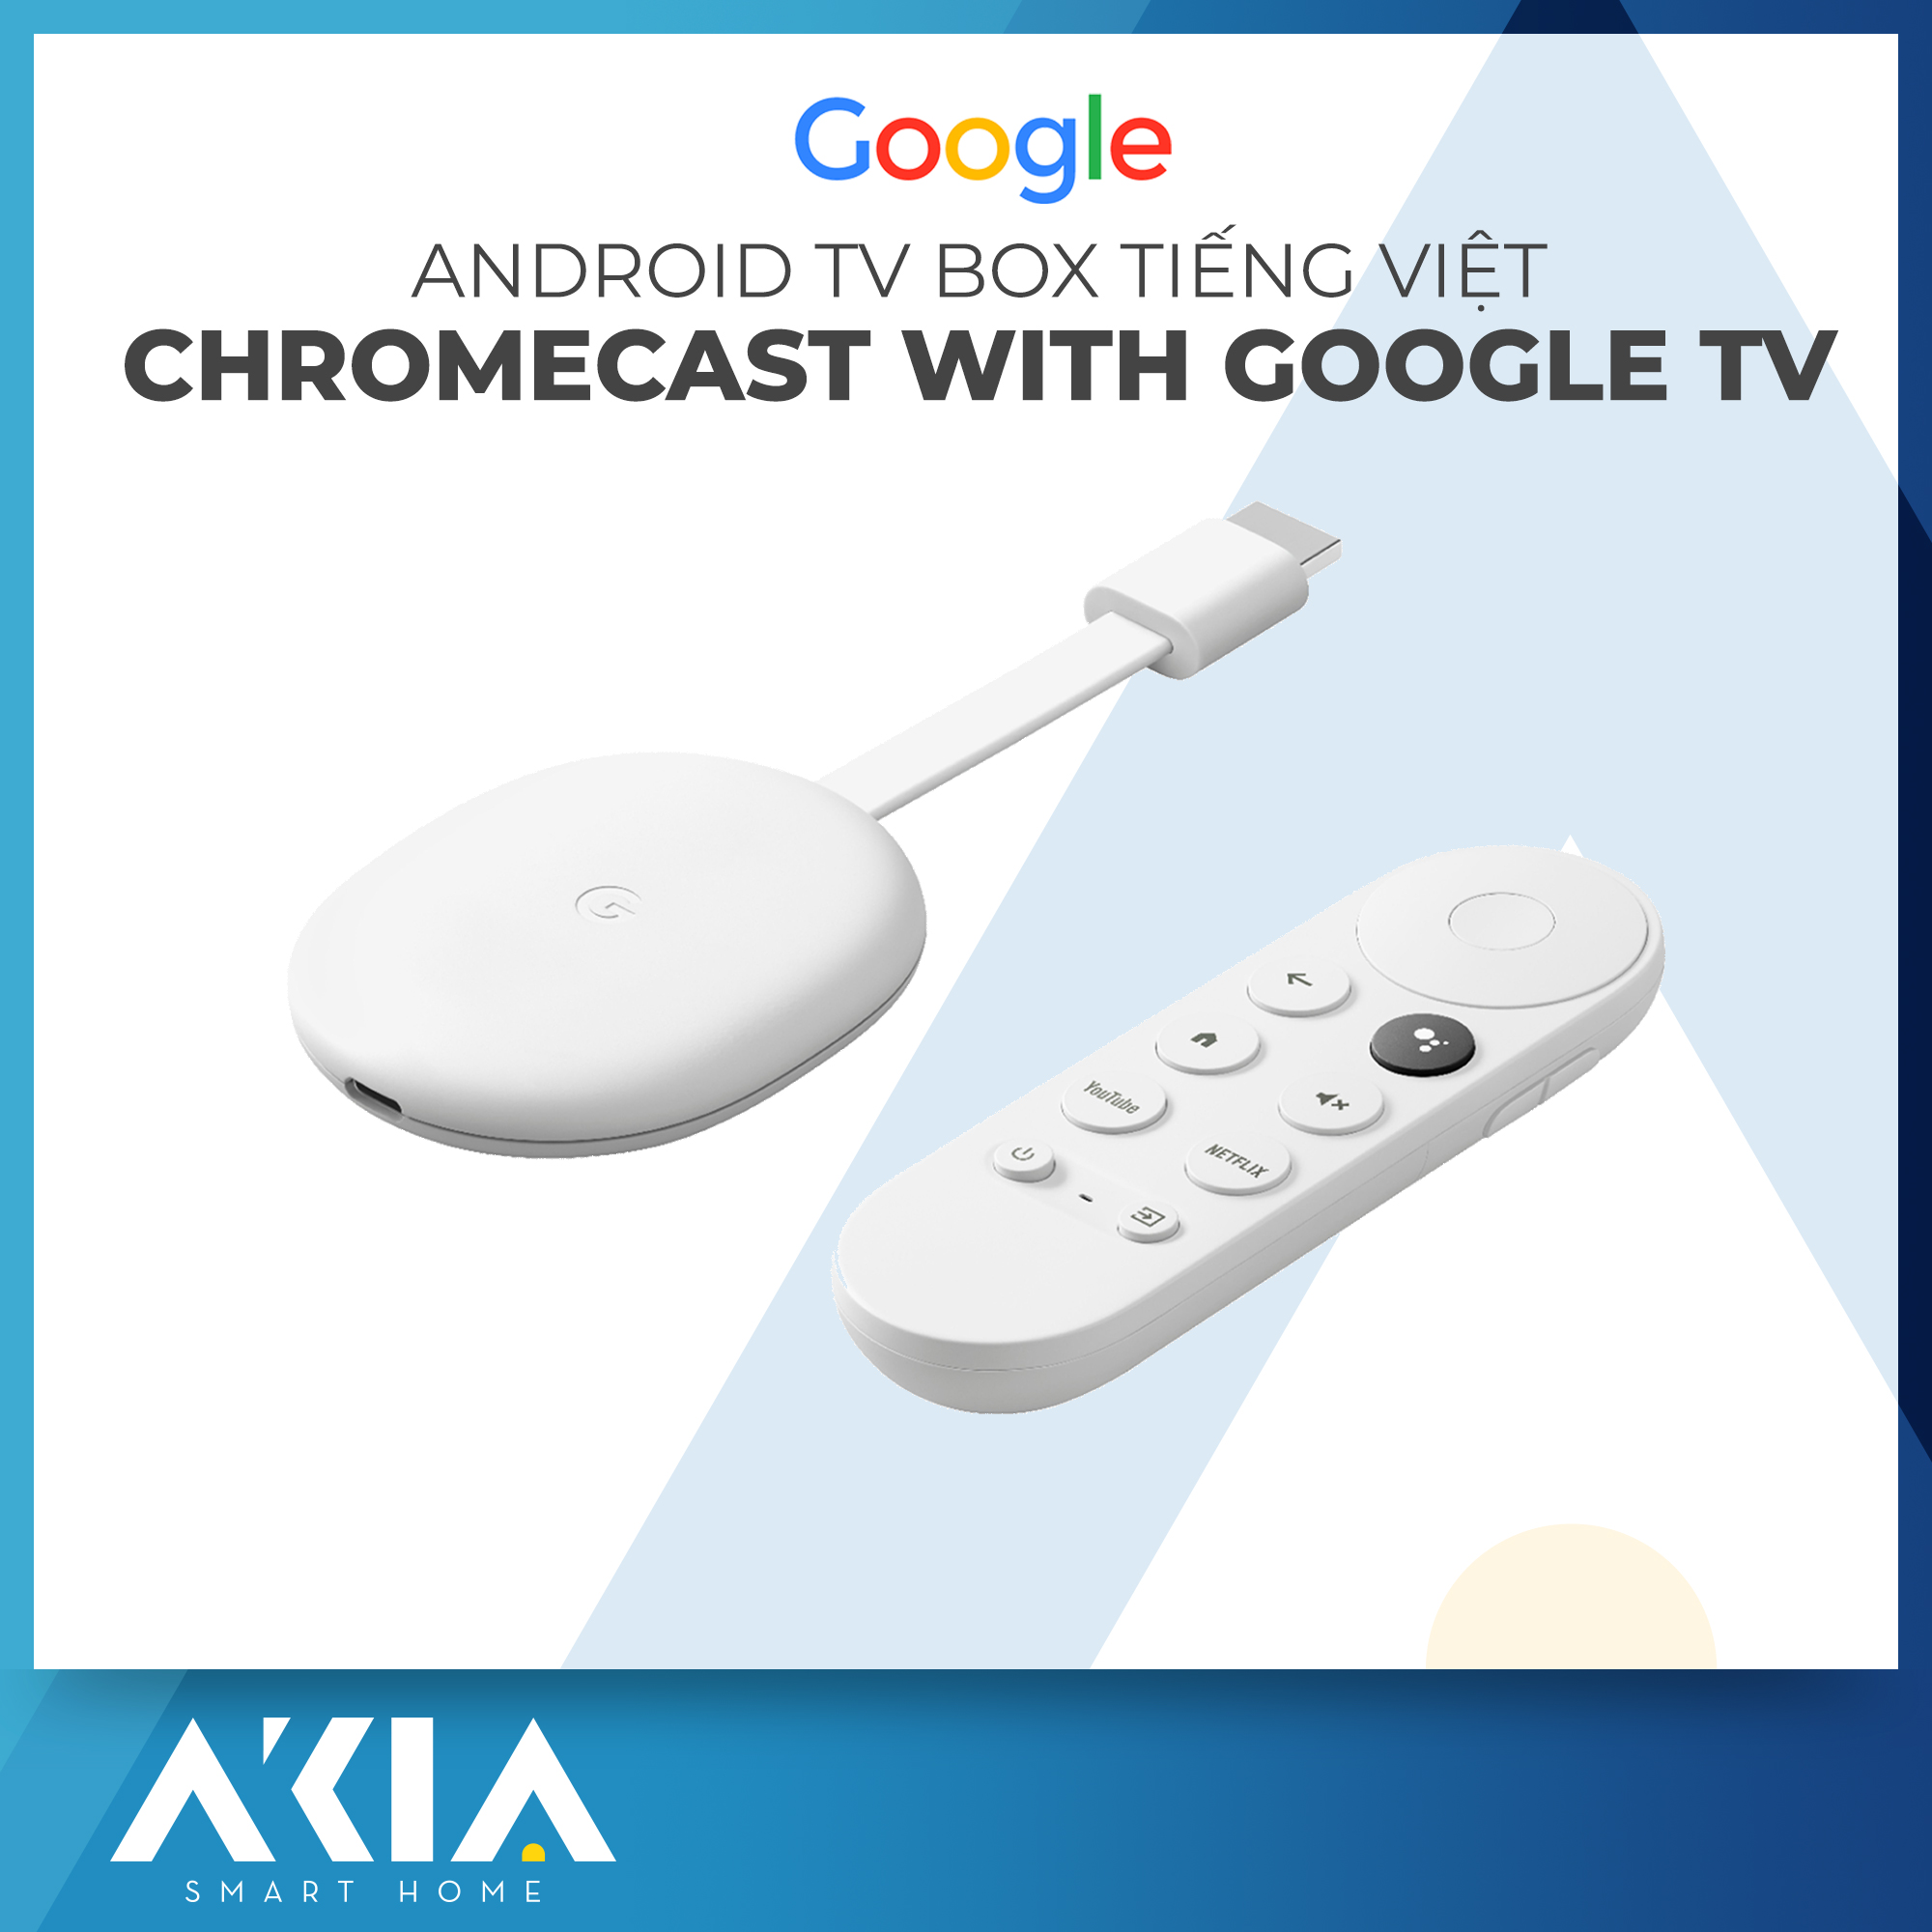 Chromecast with Google TV - Android TV Box biến TV thường thành Smart Tivi